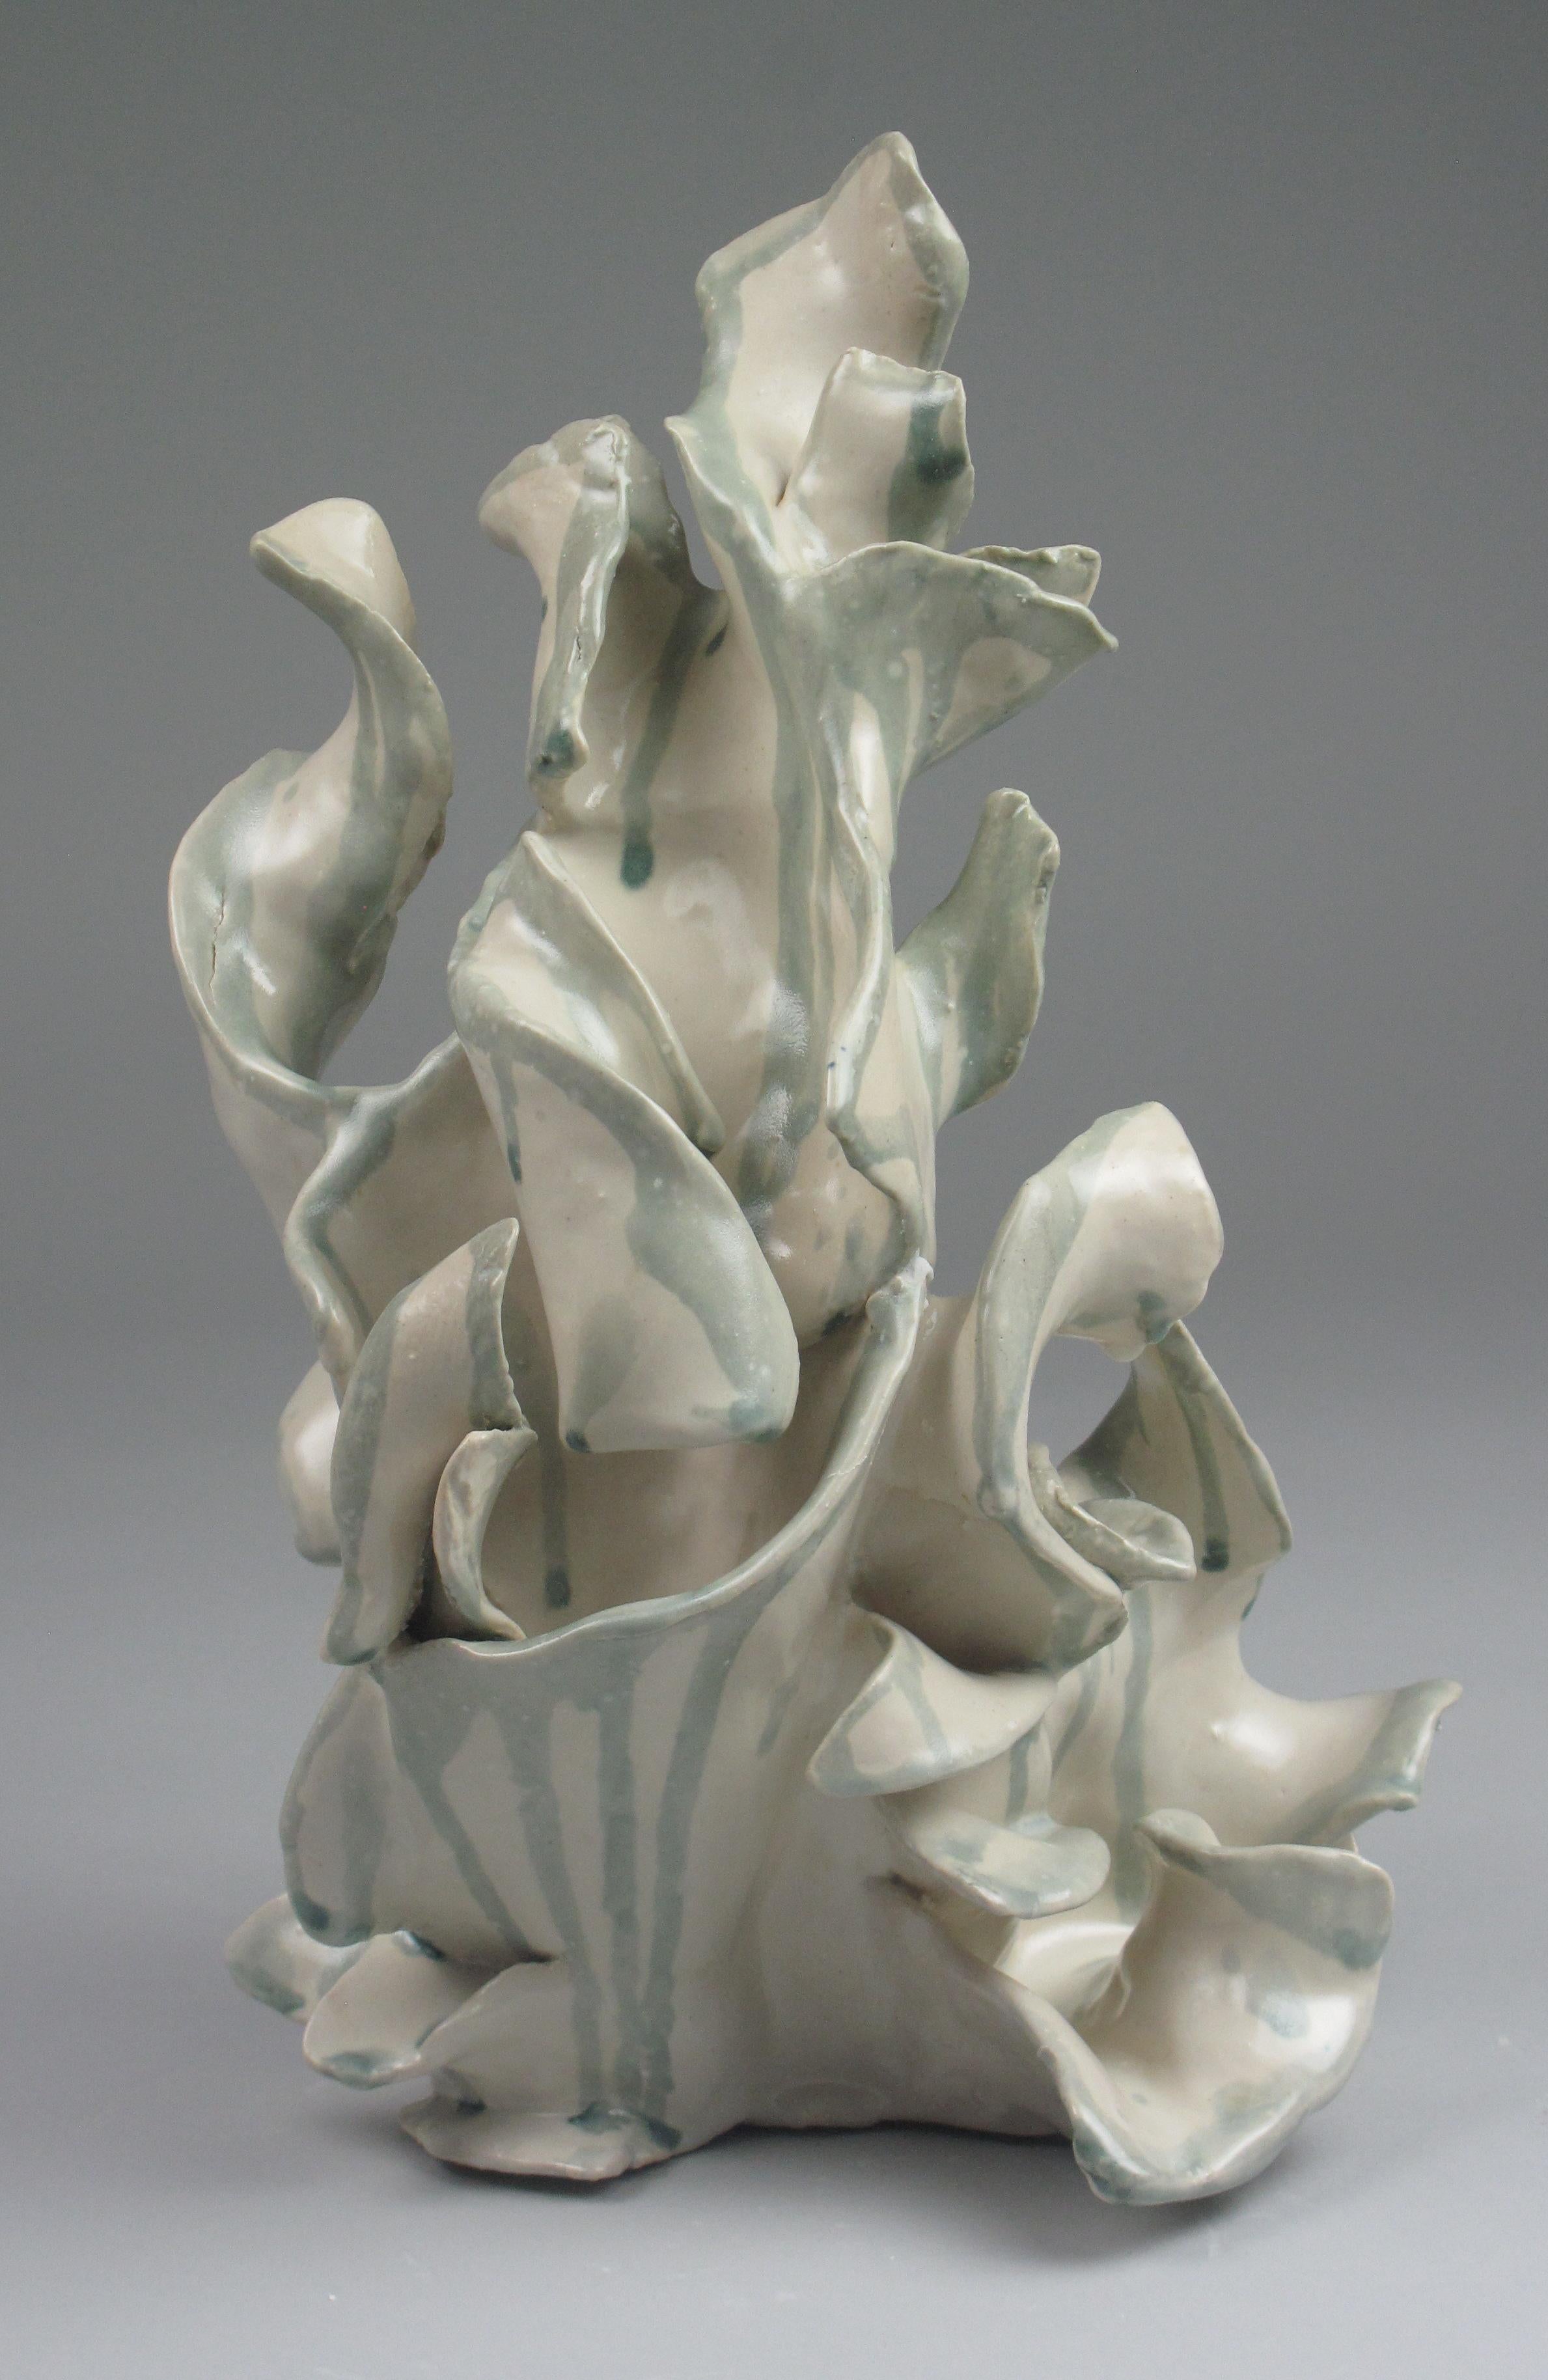 "Plume", gestural, ceramic, sculpture, white, cream, grey, teal, stoneware - Sculpture by Sara Fine-Wilson